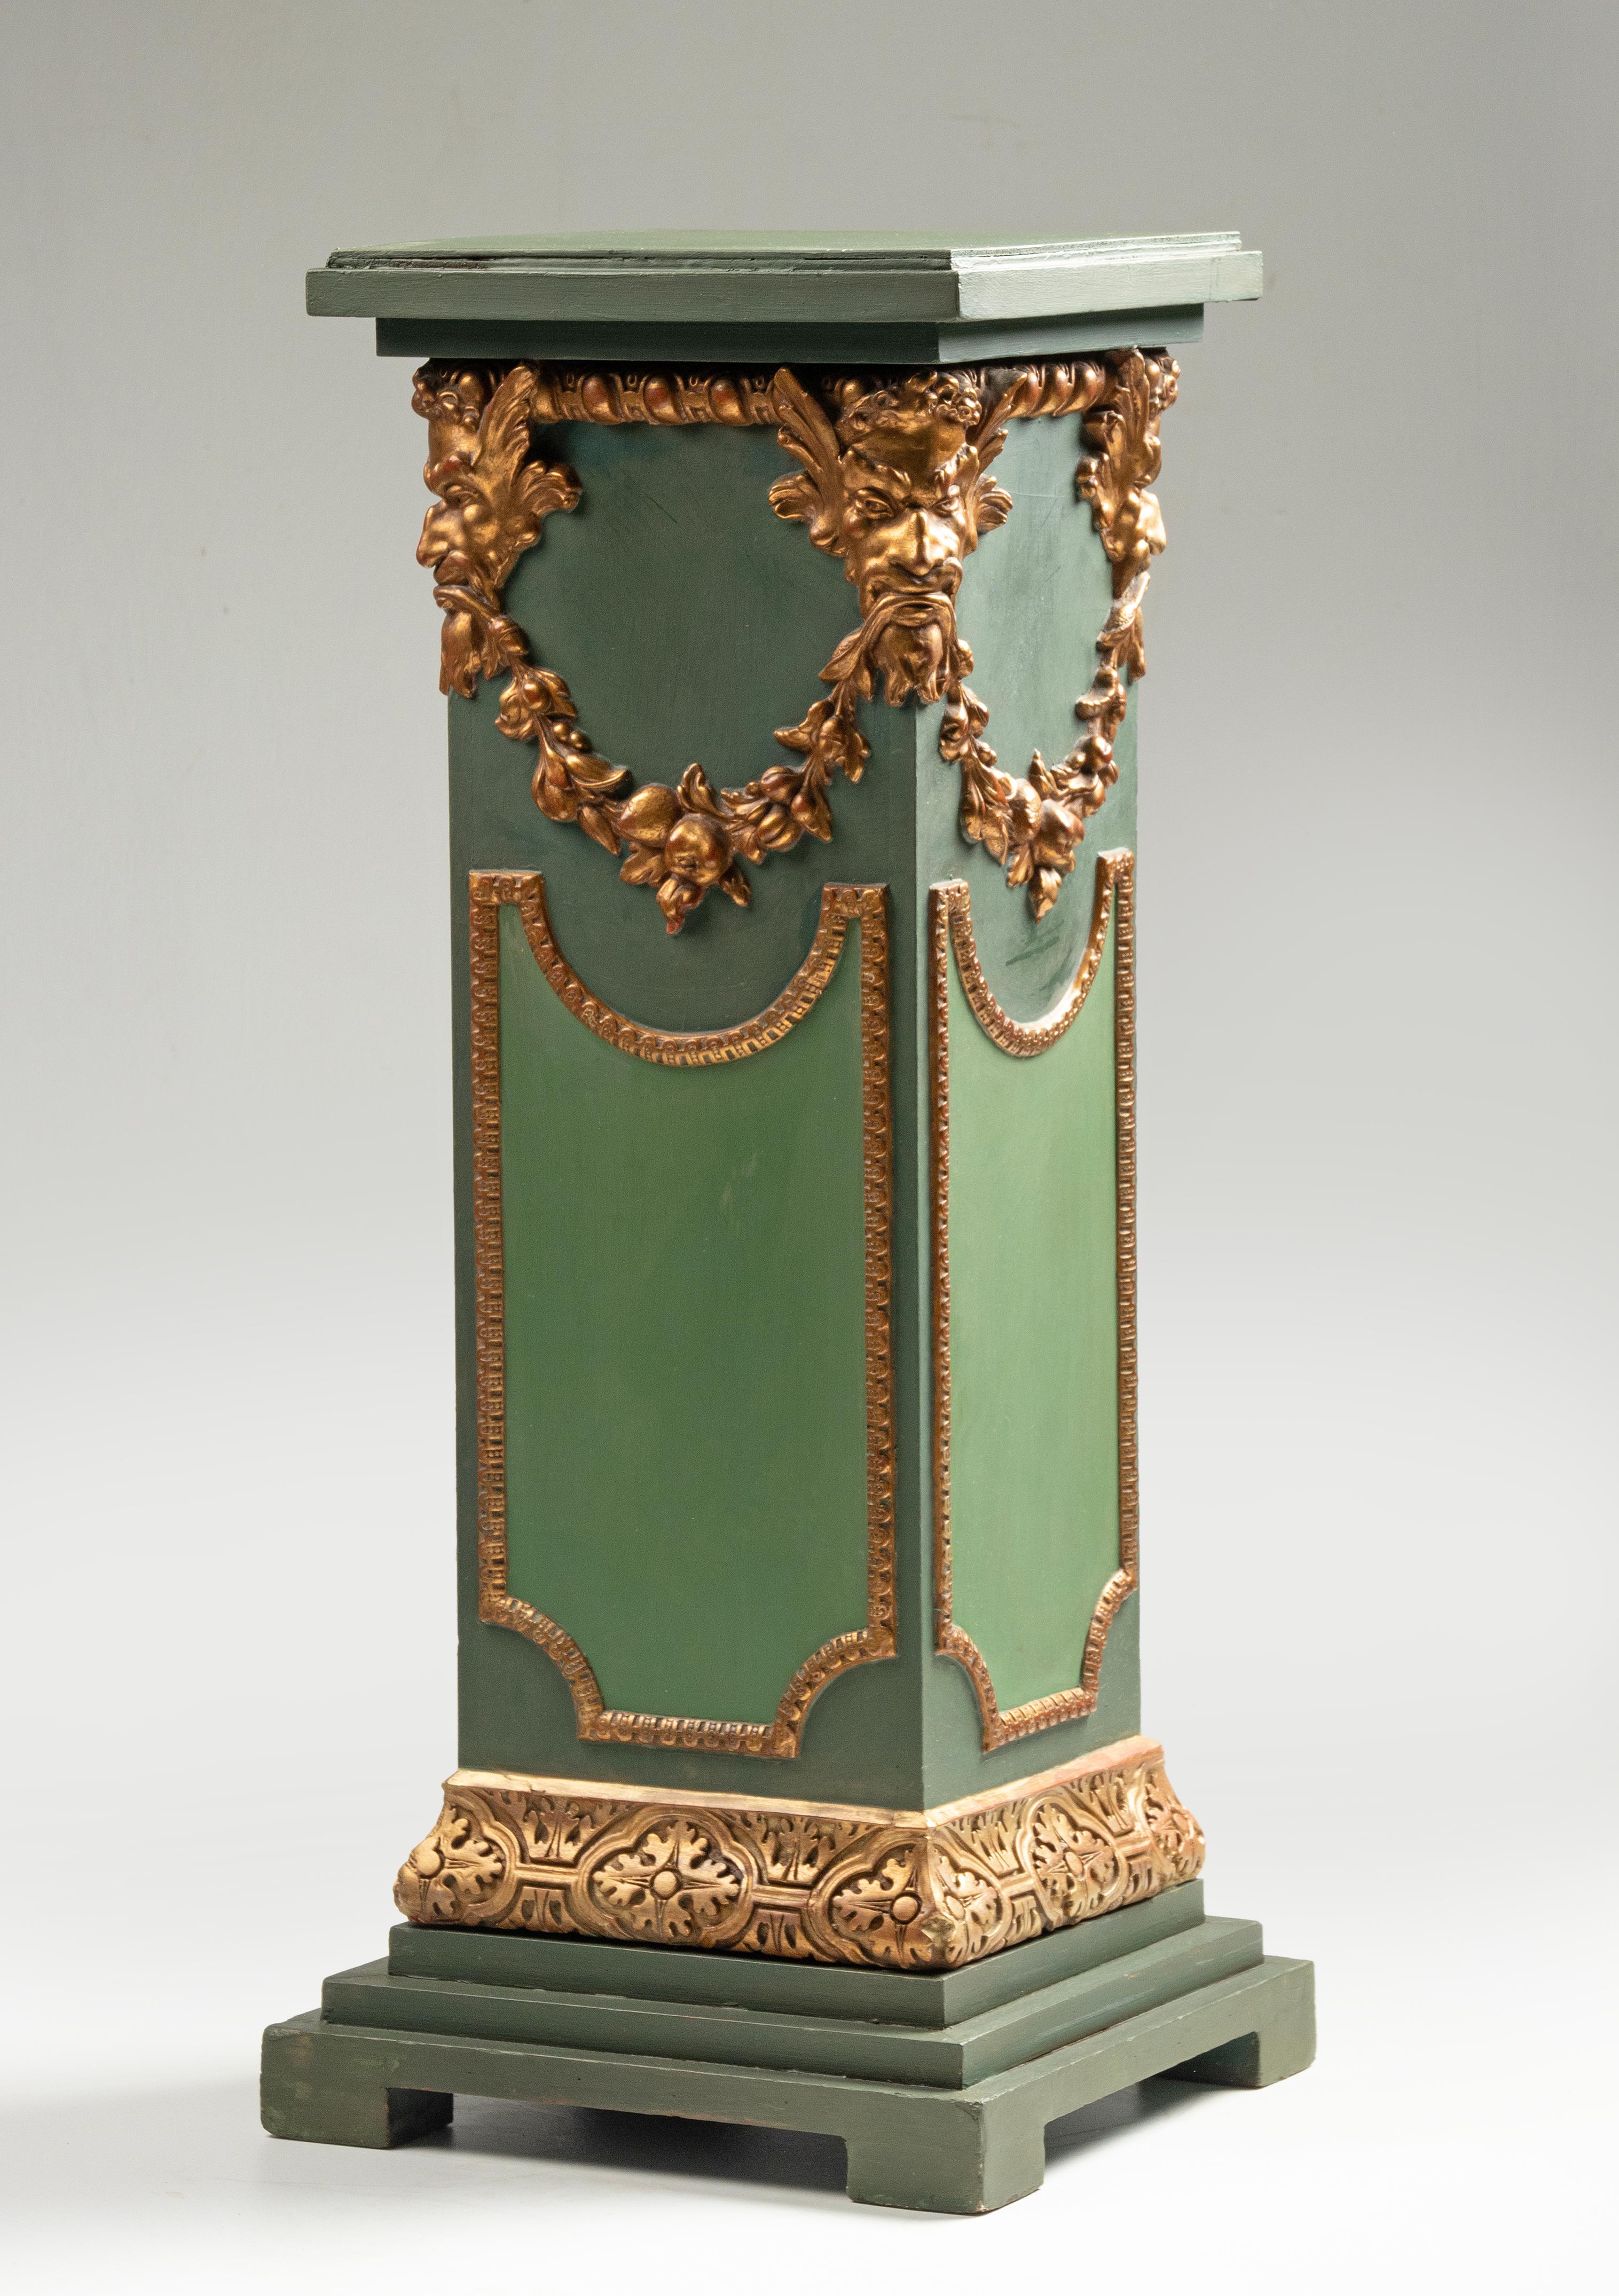 Ein grün patinierter Sockel im Renaissance-Stil. Die Säule ist aus geschnitztem Holz gefertigt und mit vergoldeten Girlanden, Köpfen und Zierleisten versehen. Ein schönes Möbelstück, um eine große Vase oder eine Skulptur aufzustellen. Hergestellt in